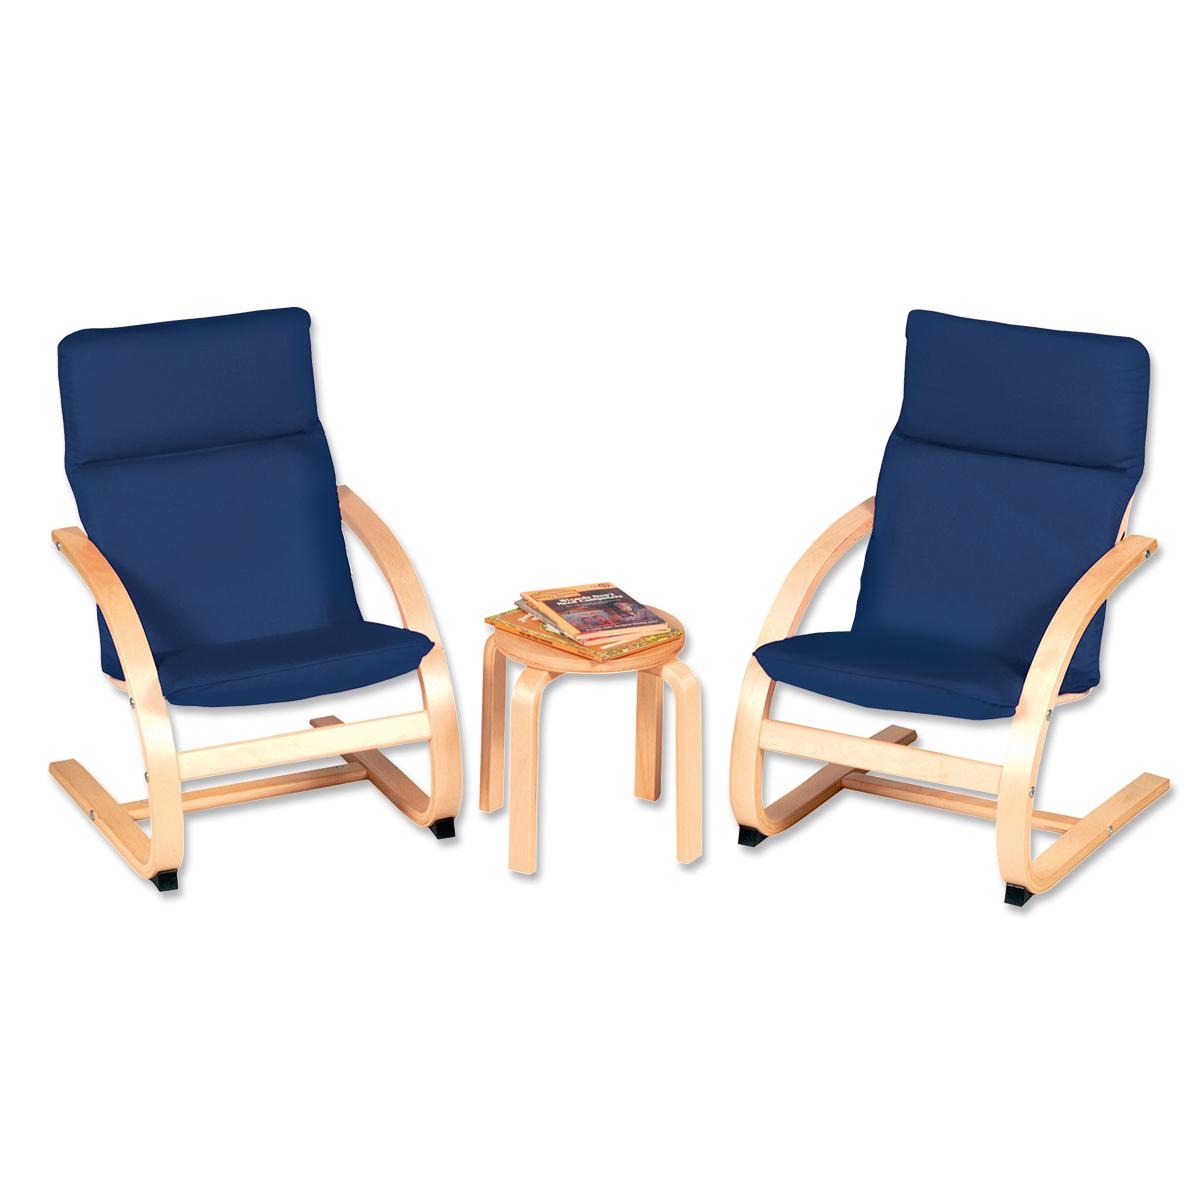  Table et chaises bleues pour enfants 